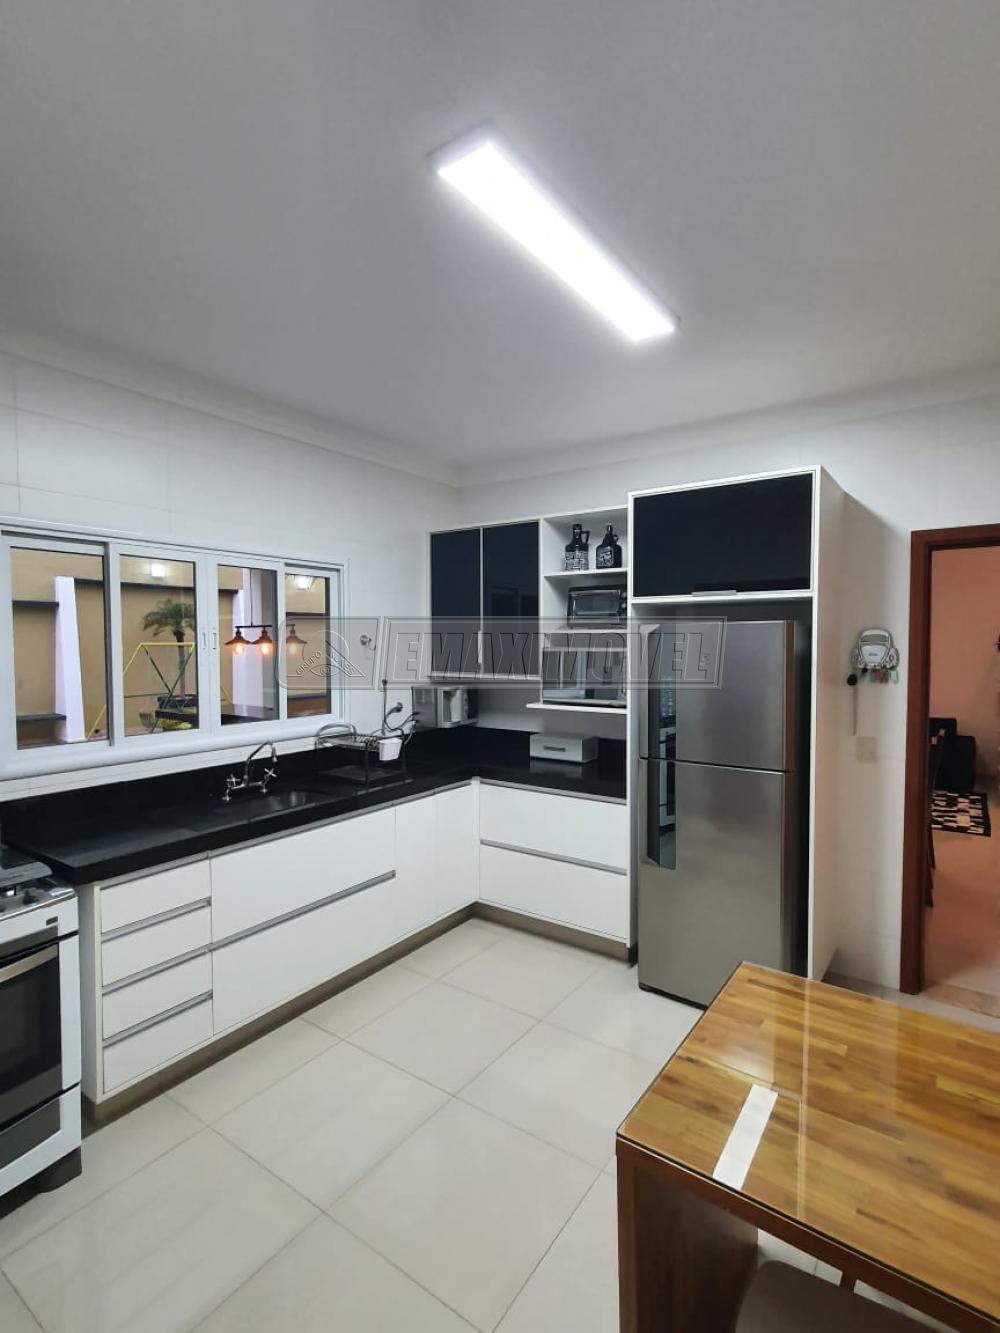 Comprar Casa / em Condomínios em Votorantim R$ 1.550.000,00 - Foto 18